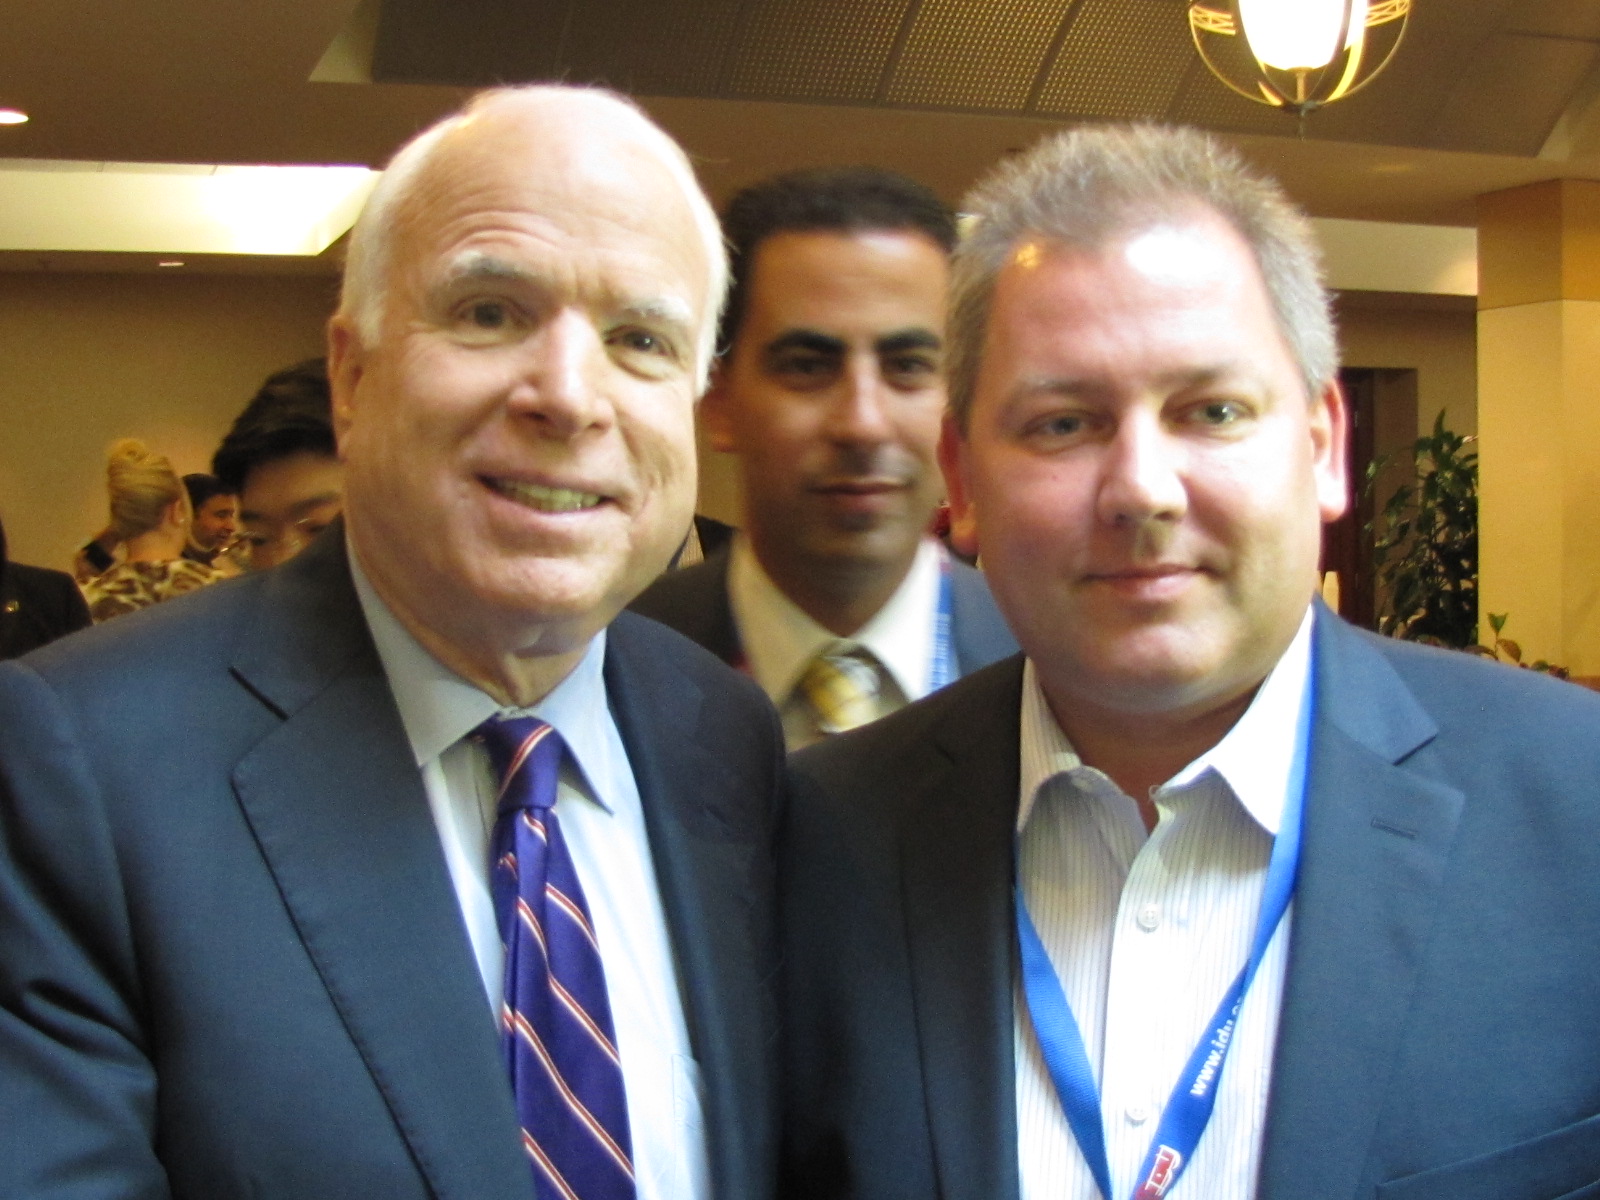 Krzysztof Lisek podczas potkania z Johnem Mc Cainem, legendą Partii Republikańskiej i rywalem Obamy<br />
